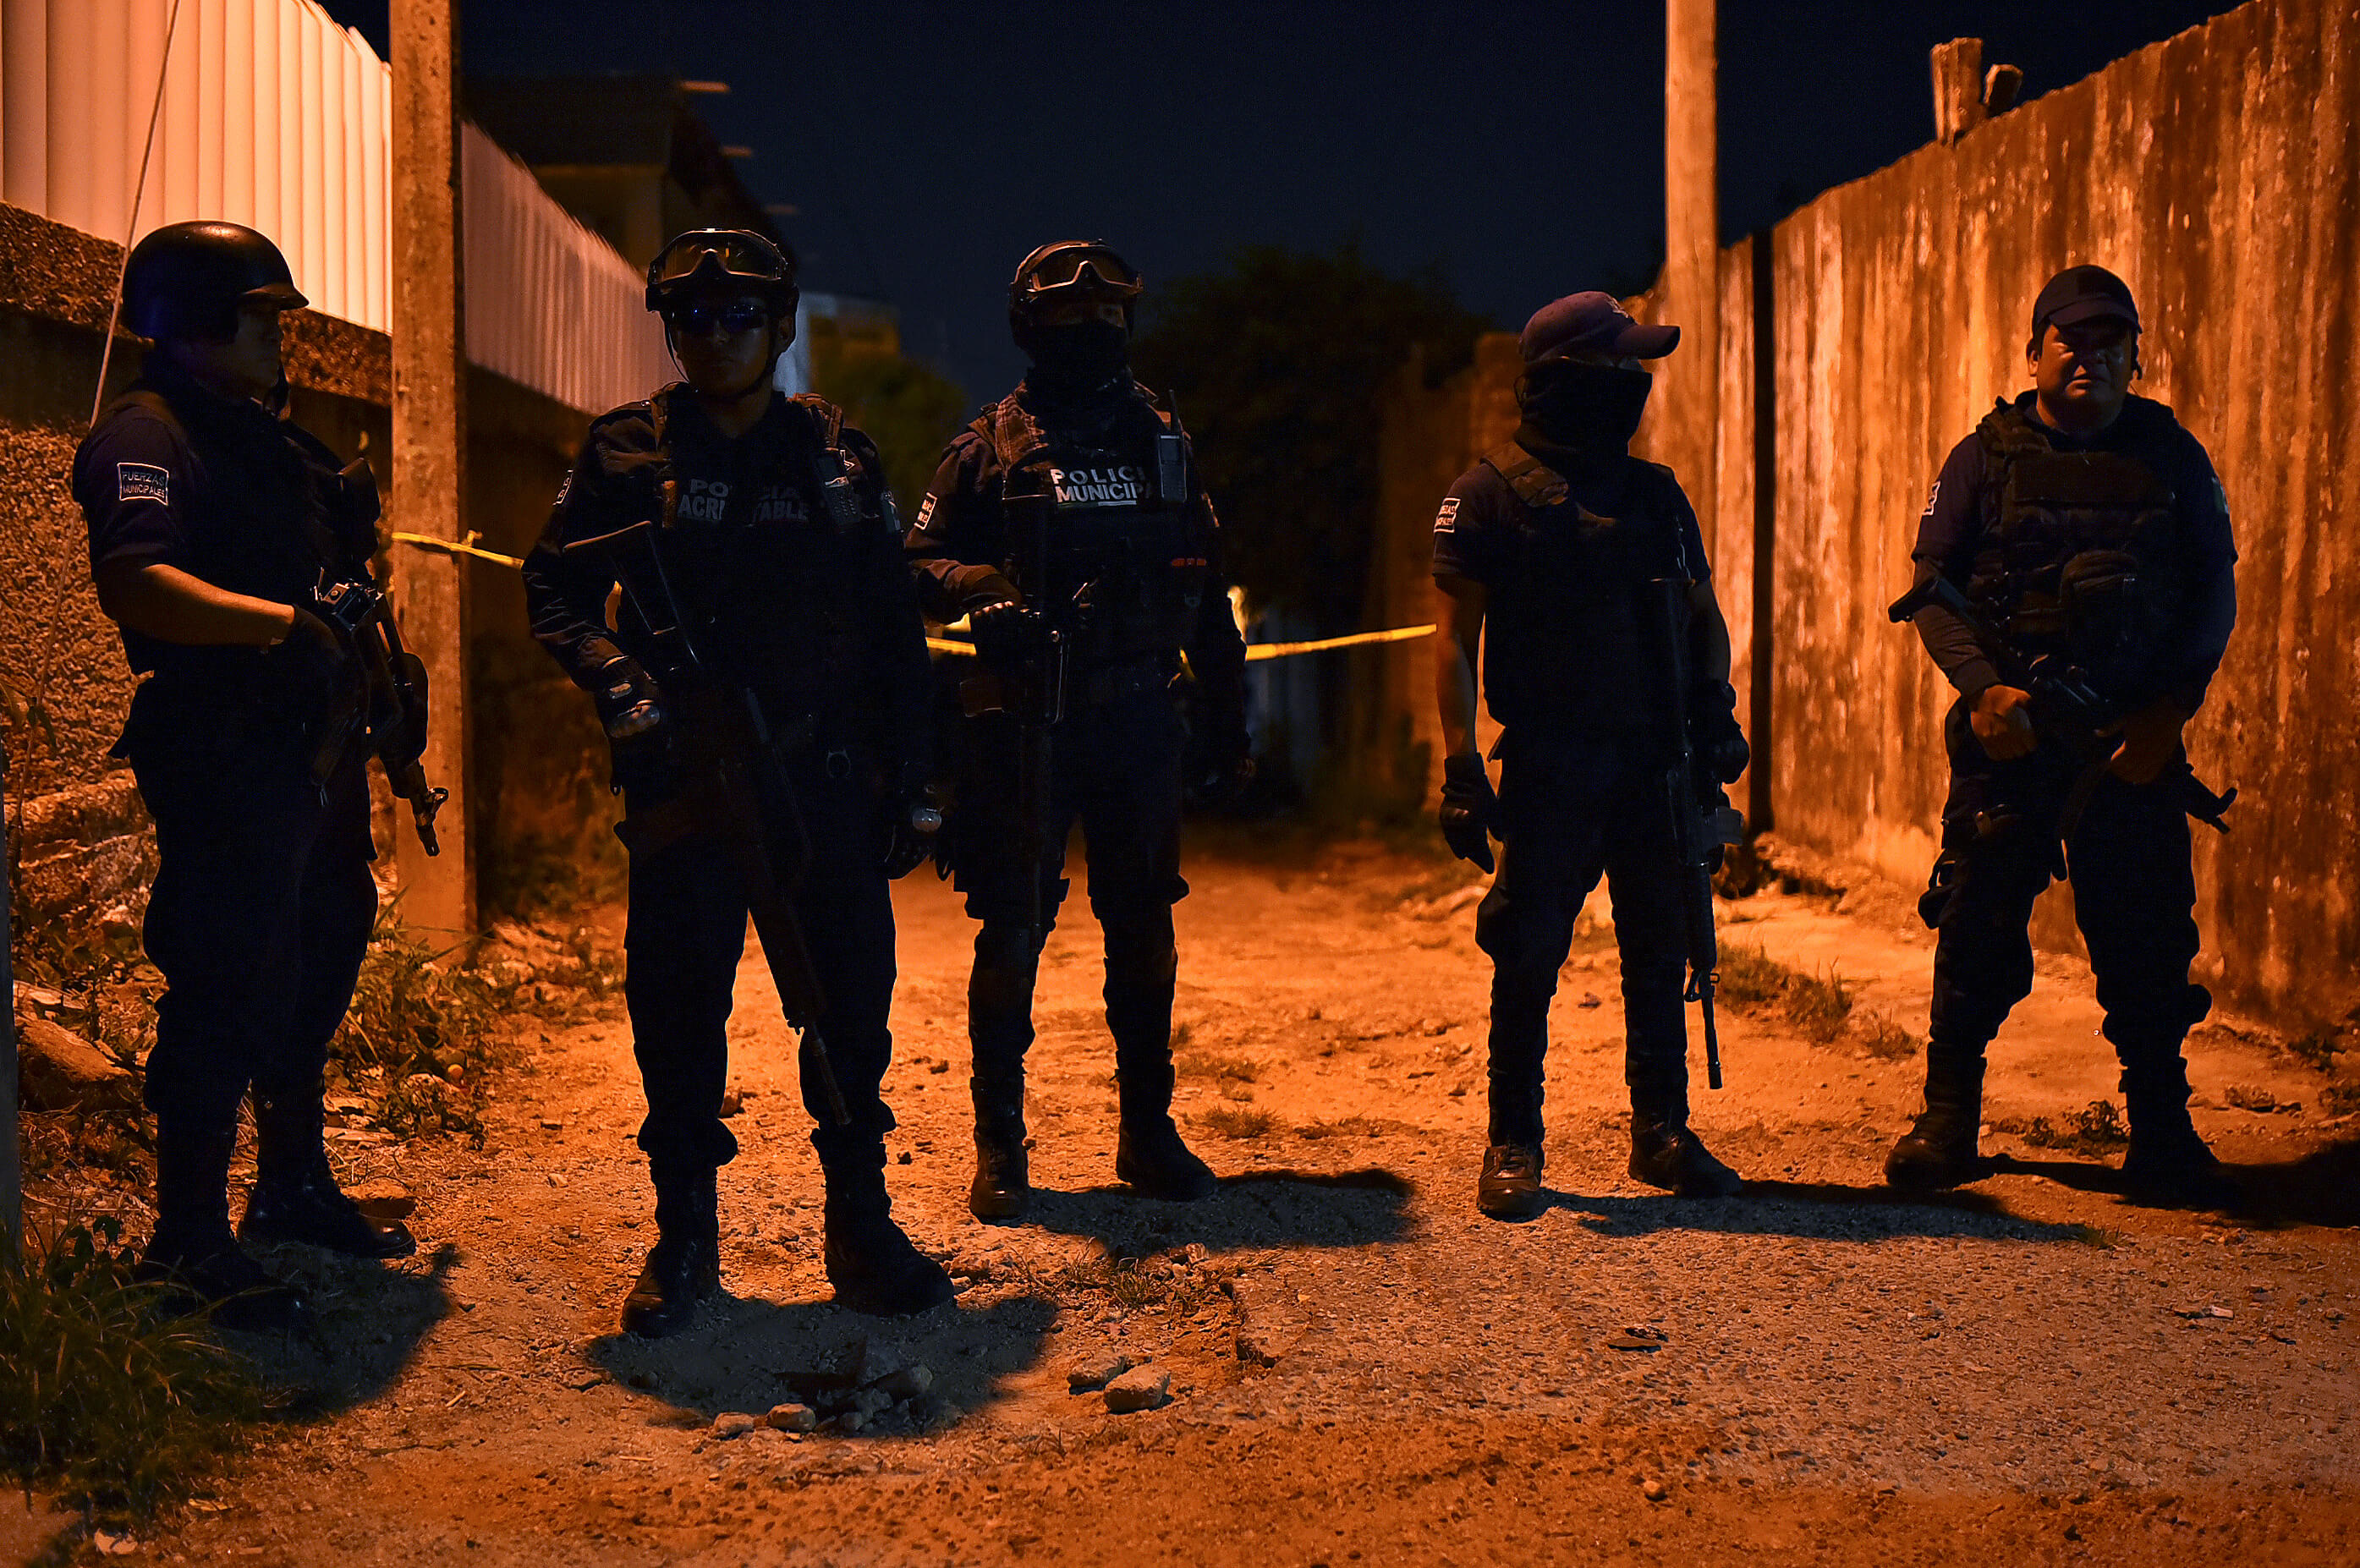 Foto: Policías vigilan el bar “Los Potros”, en Minatitlán, Veracruz, después que un comando armado dispara contra una multitud. El 19 de abril de 2019